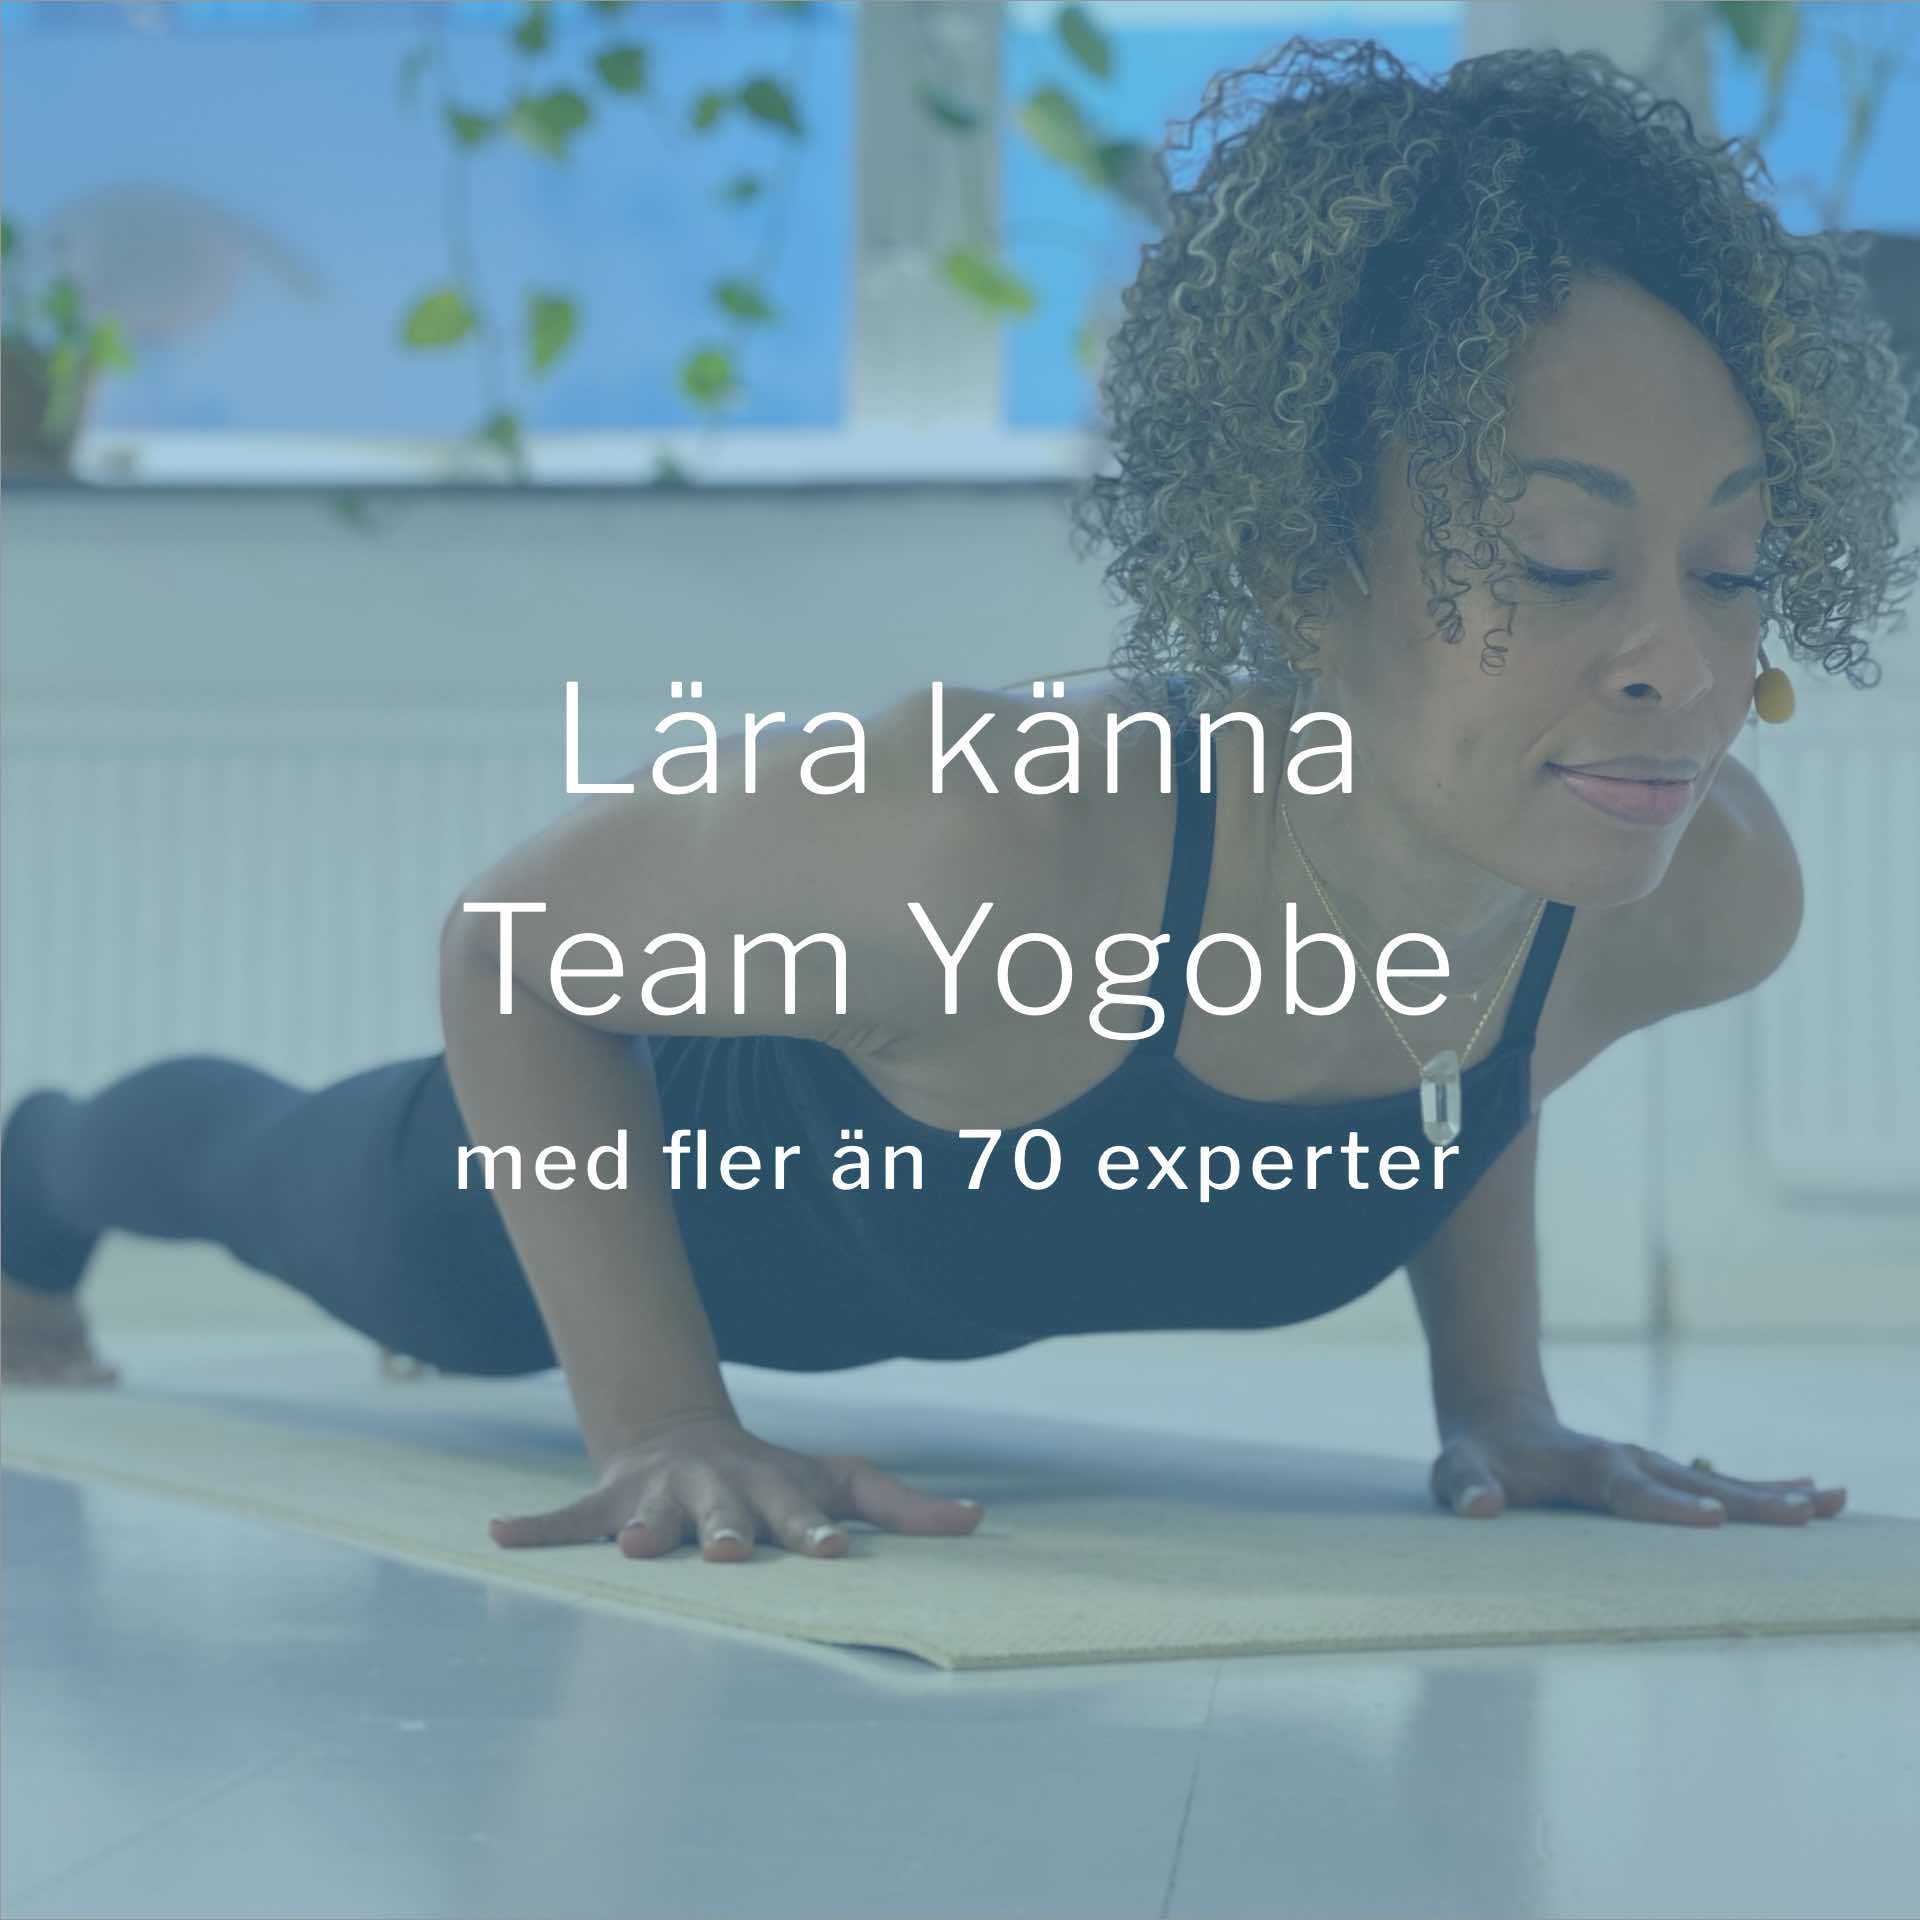 Bli kjent med Team Yogobe - med over 90 eksperter og lærere innen yoga, trening, meditasjon og pust.